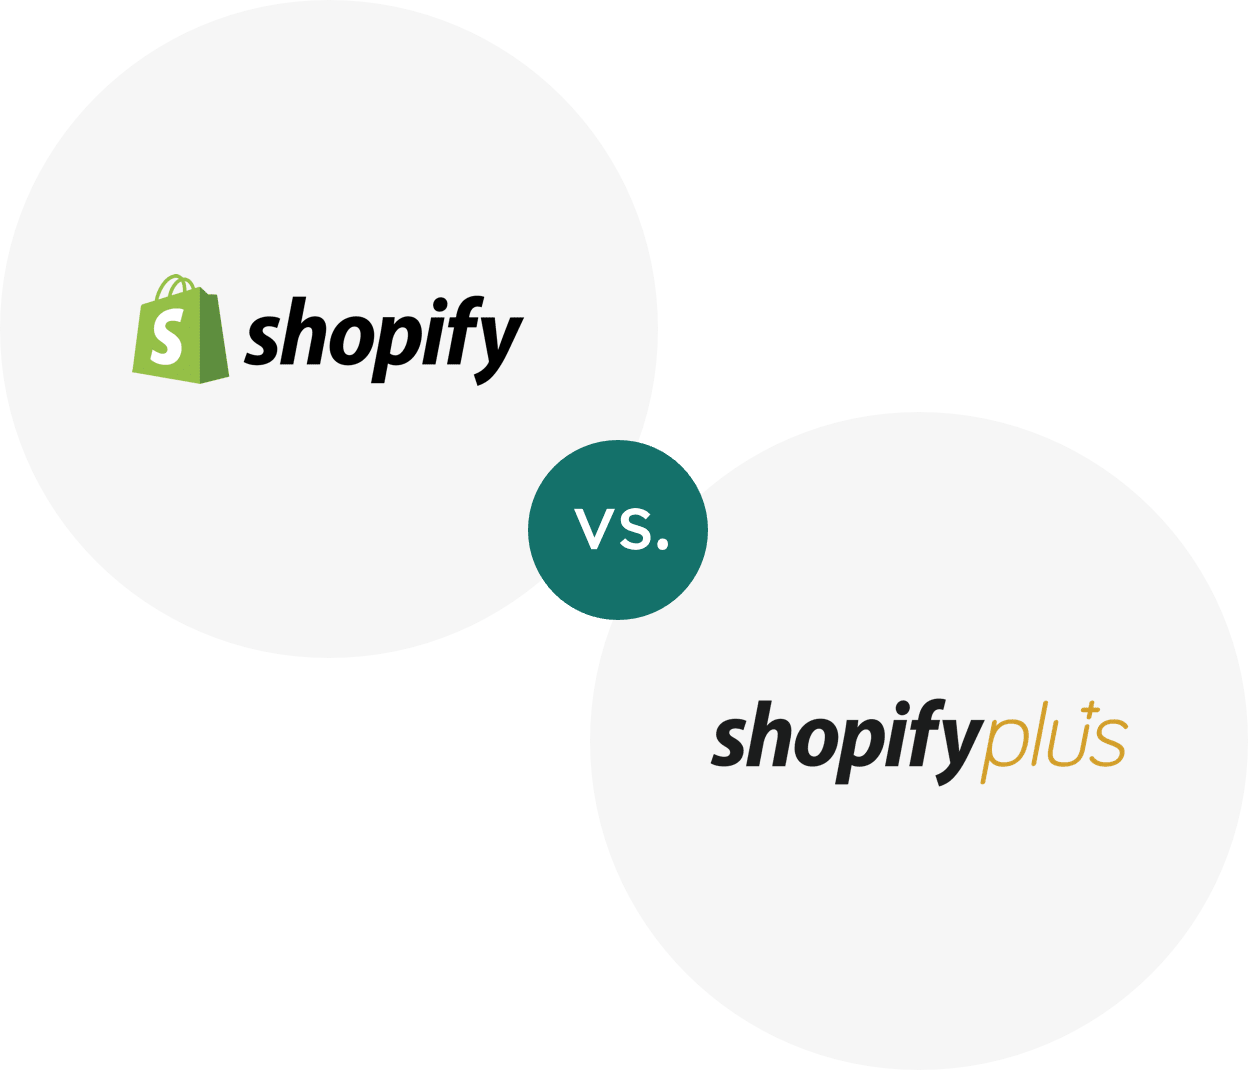 Shopify vs Shopify Plus